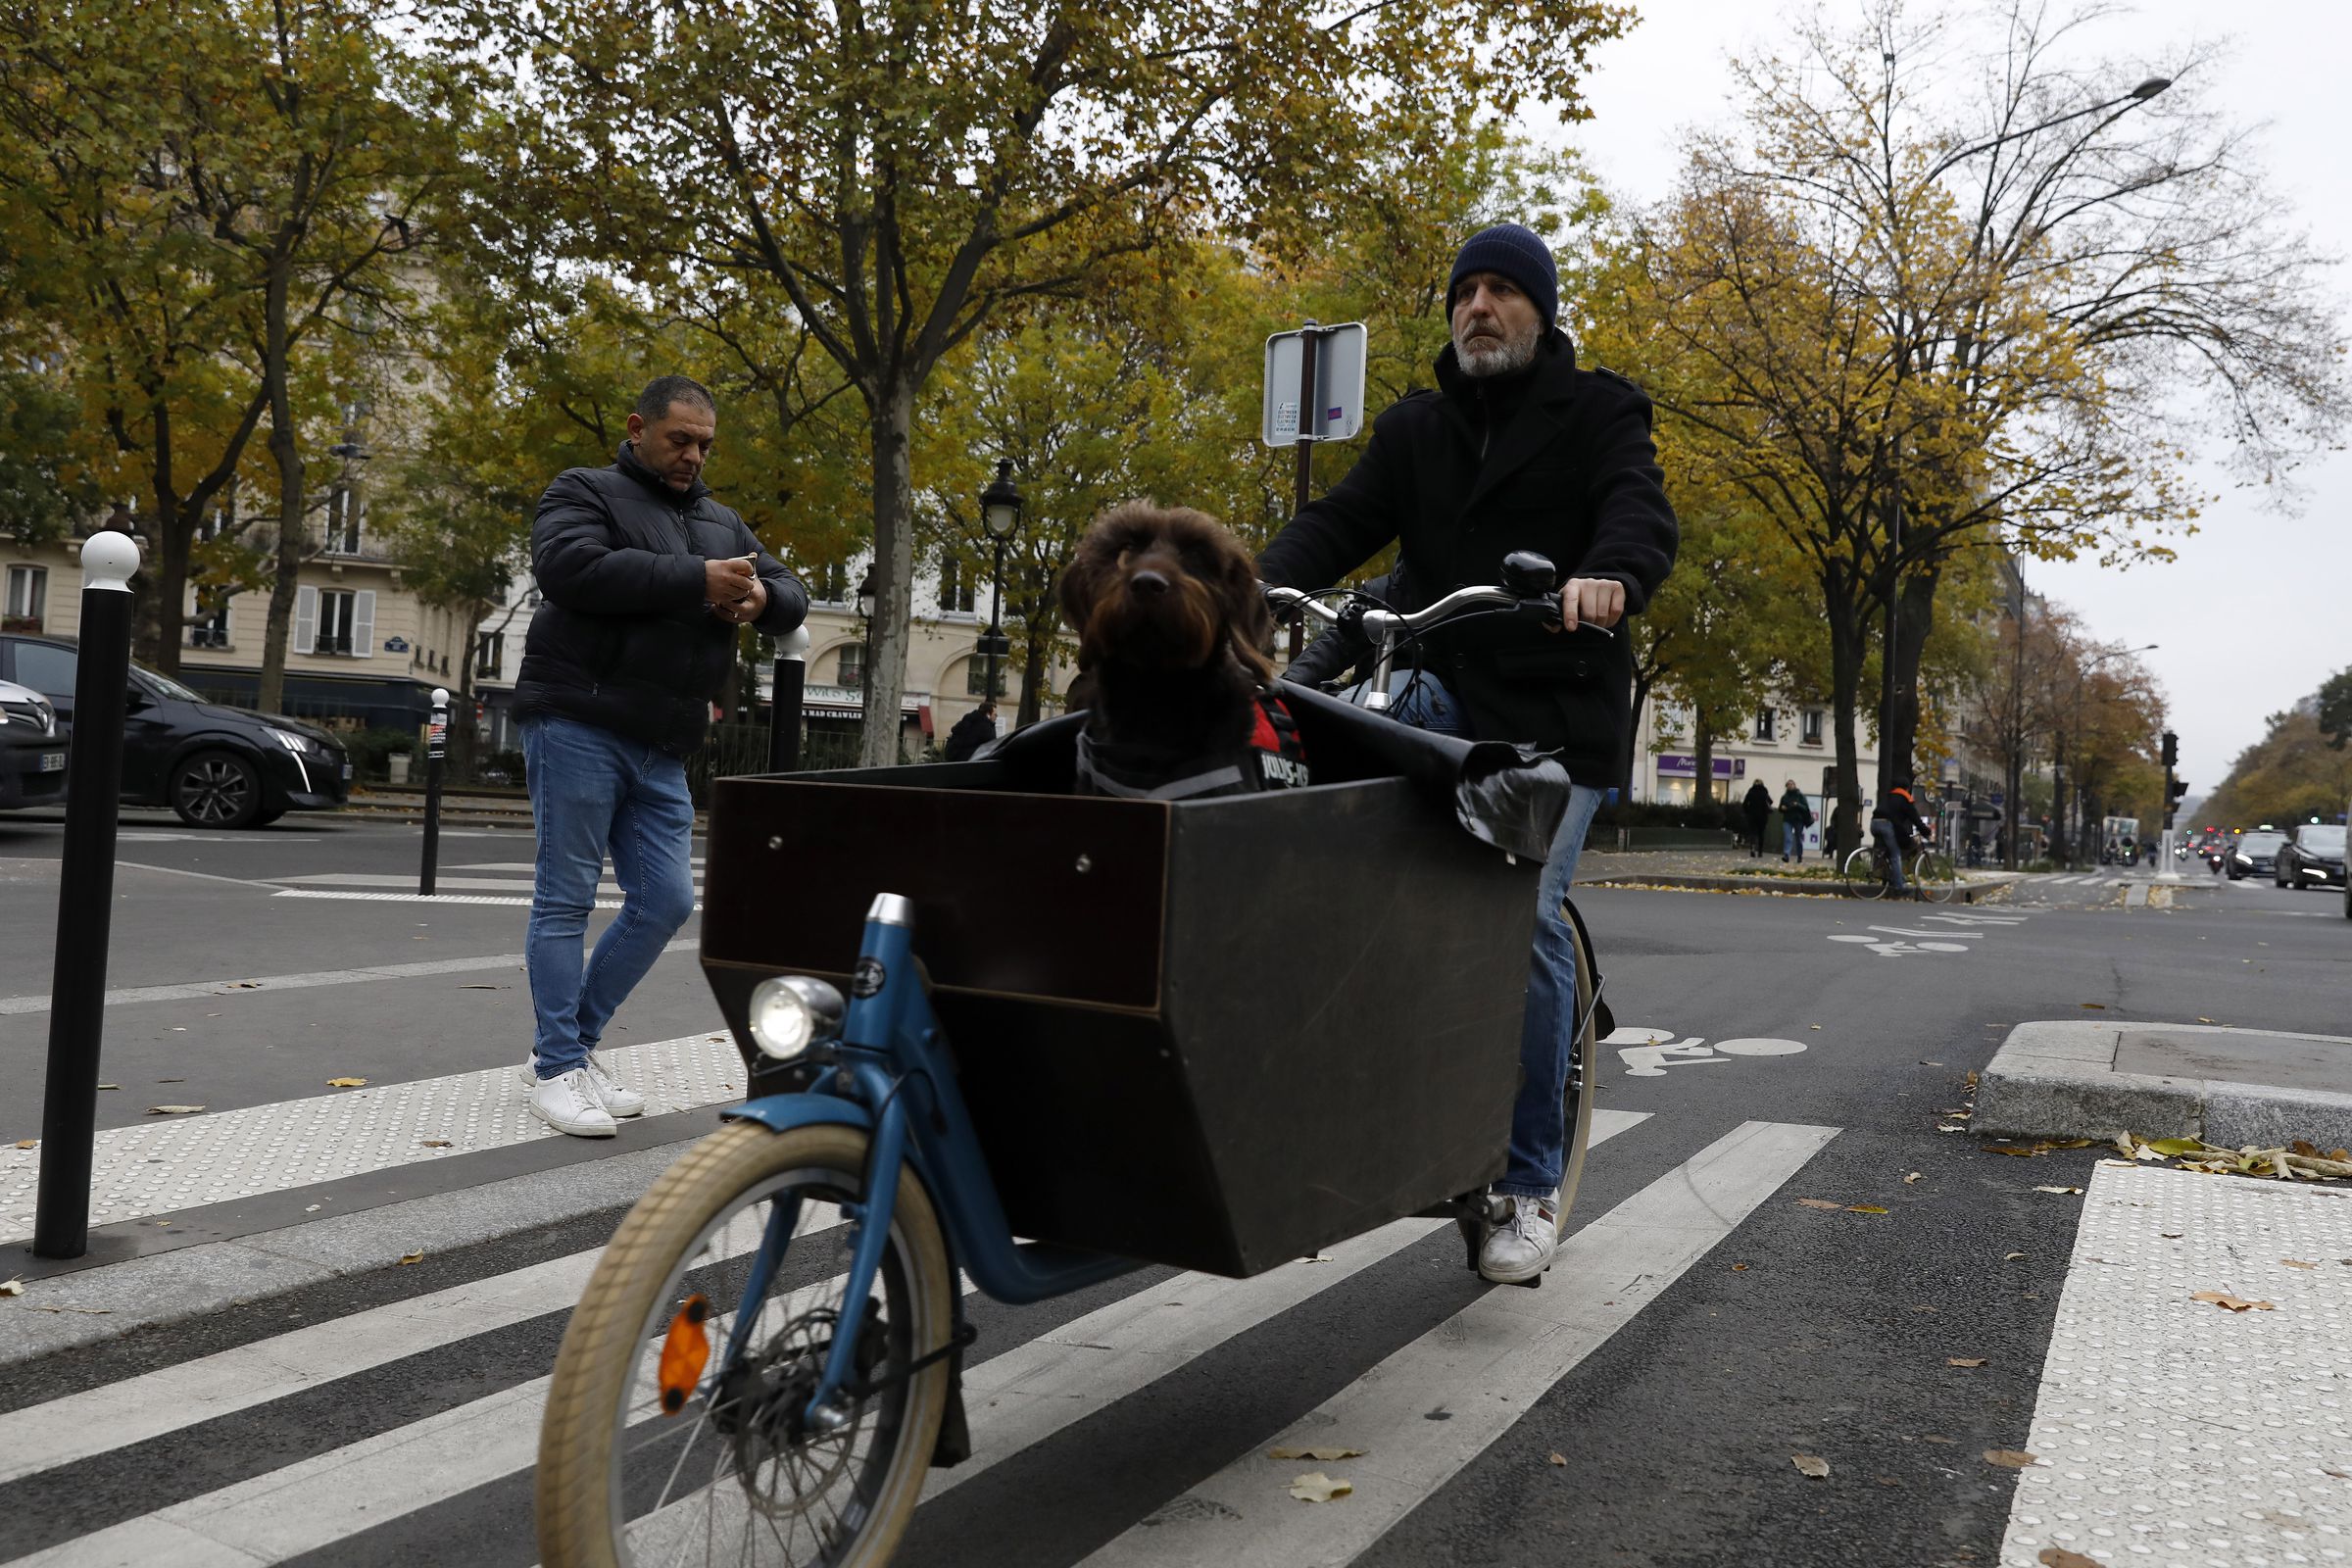 Parigi diventa verde e le piste ciclabili si espandono nell'ambito della sostenibilità urbana